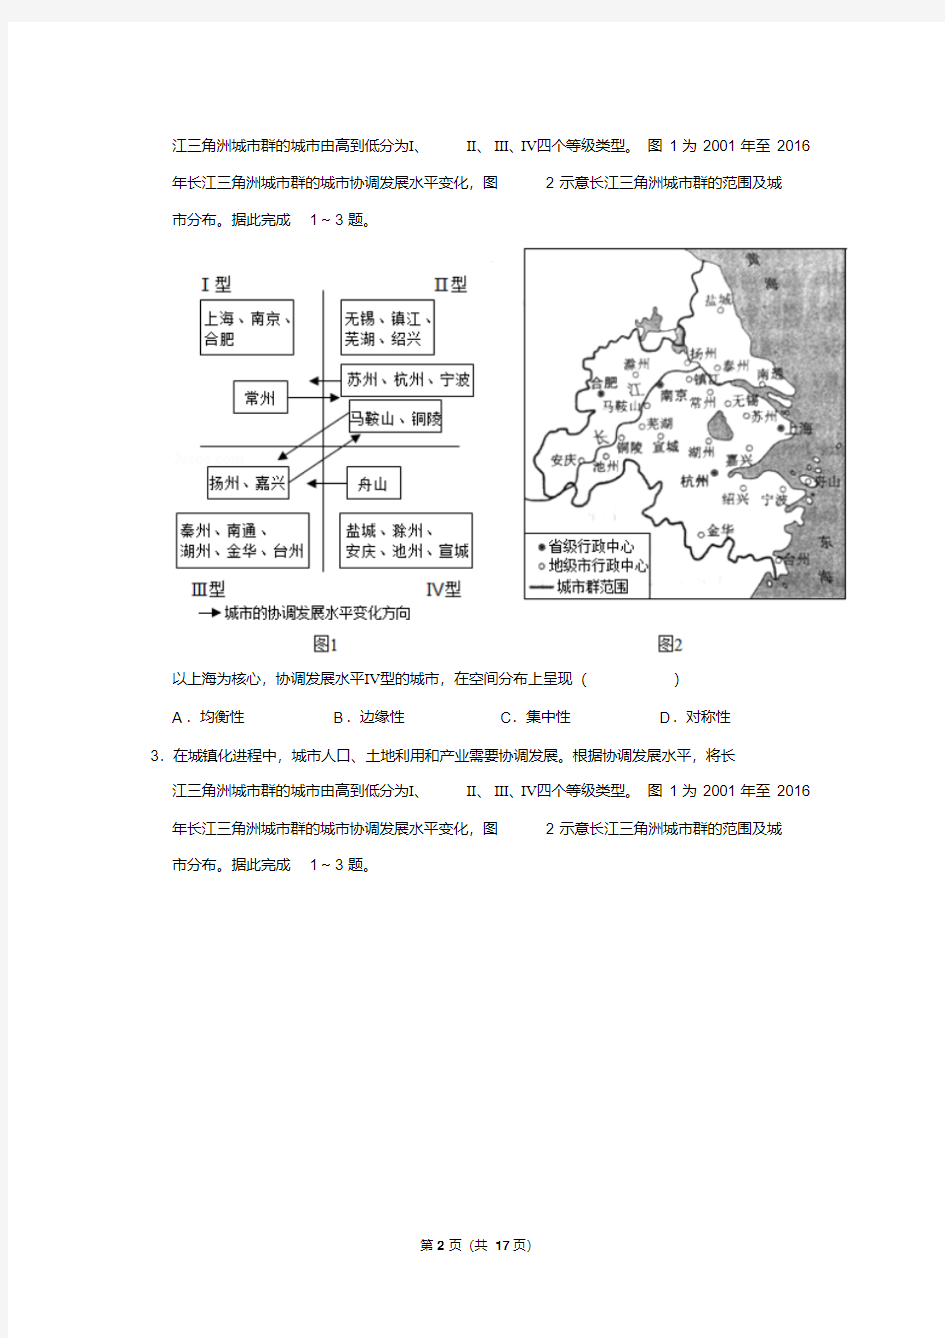 重庆市2019年高考地理试卷以及答案解析